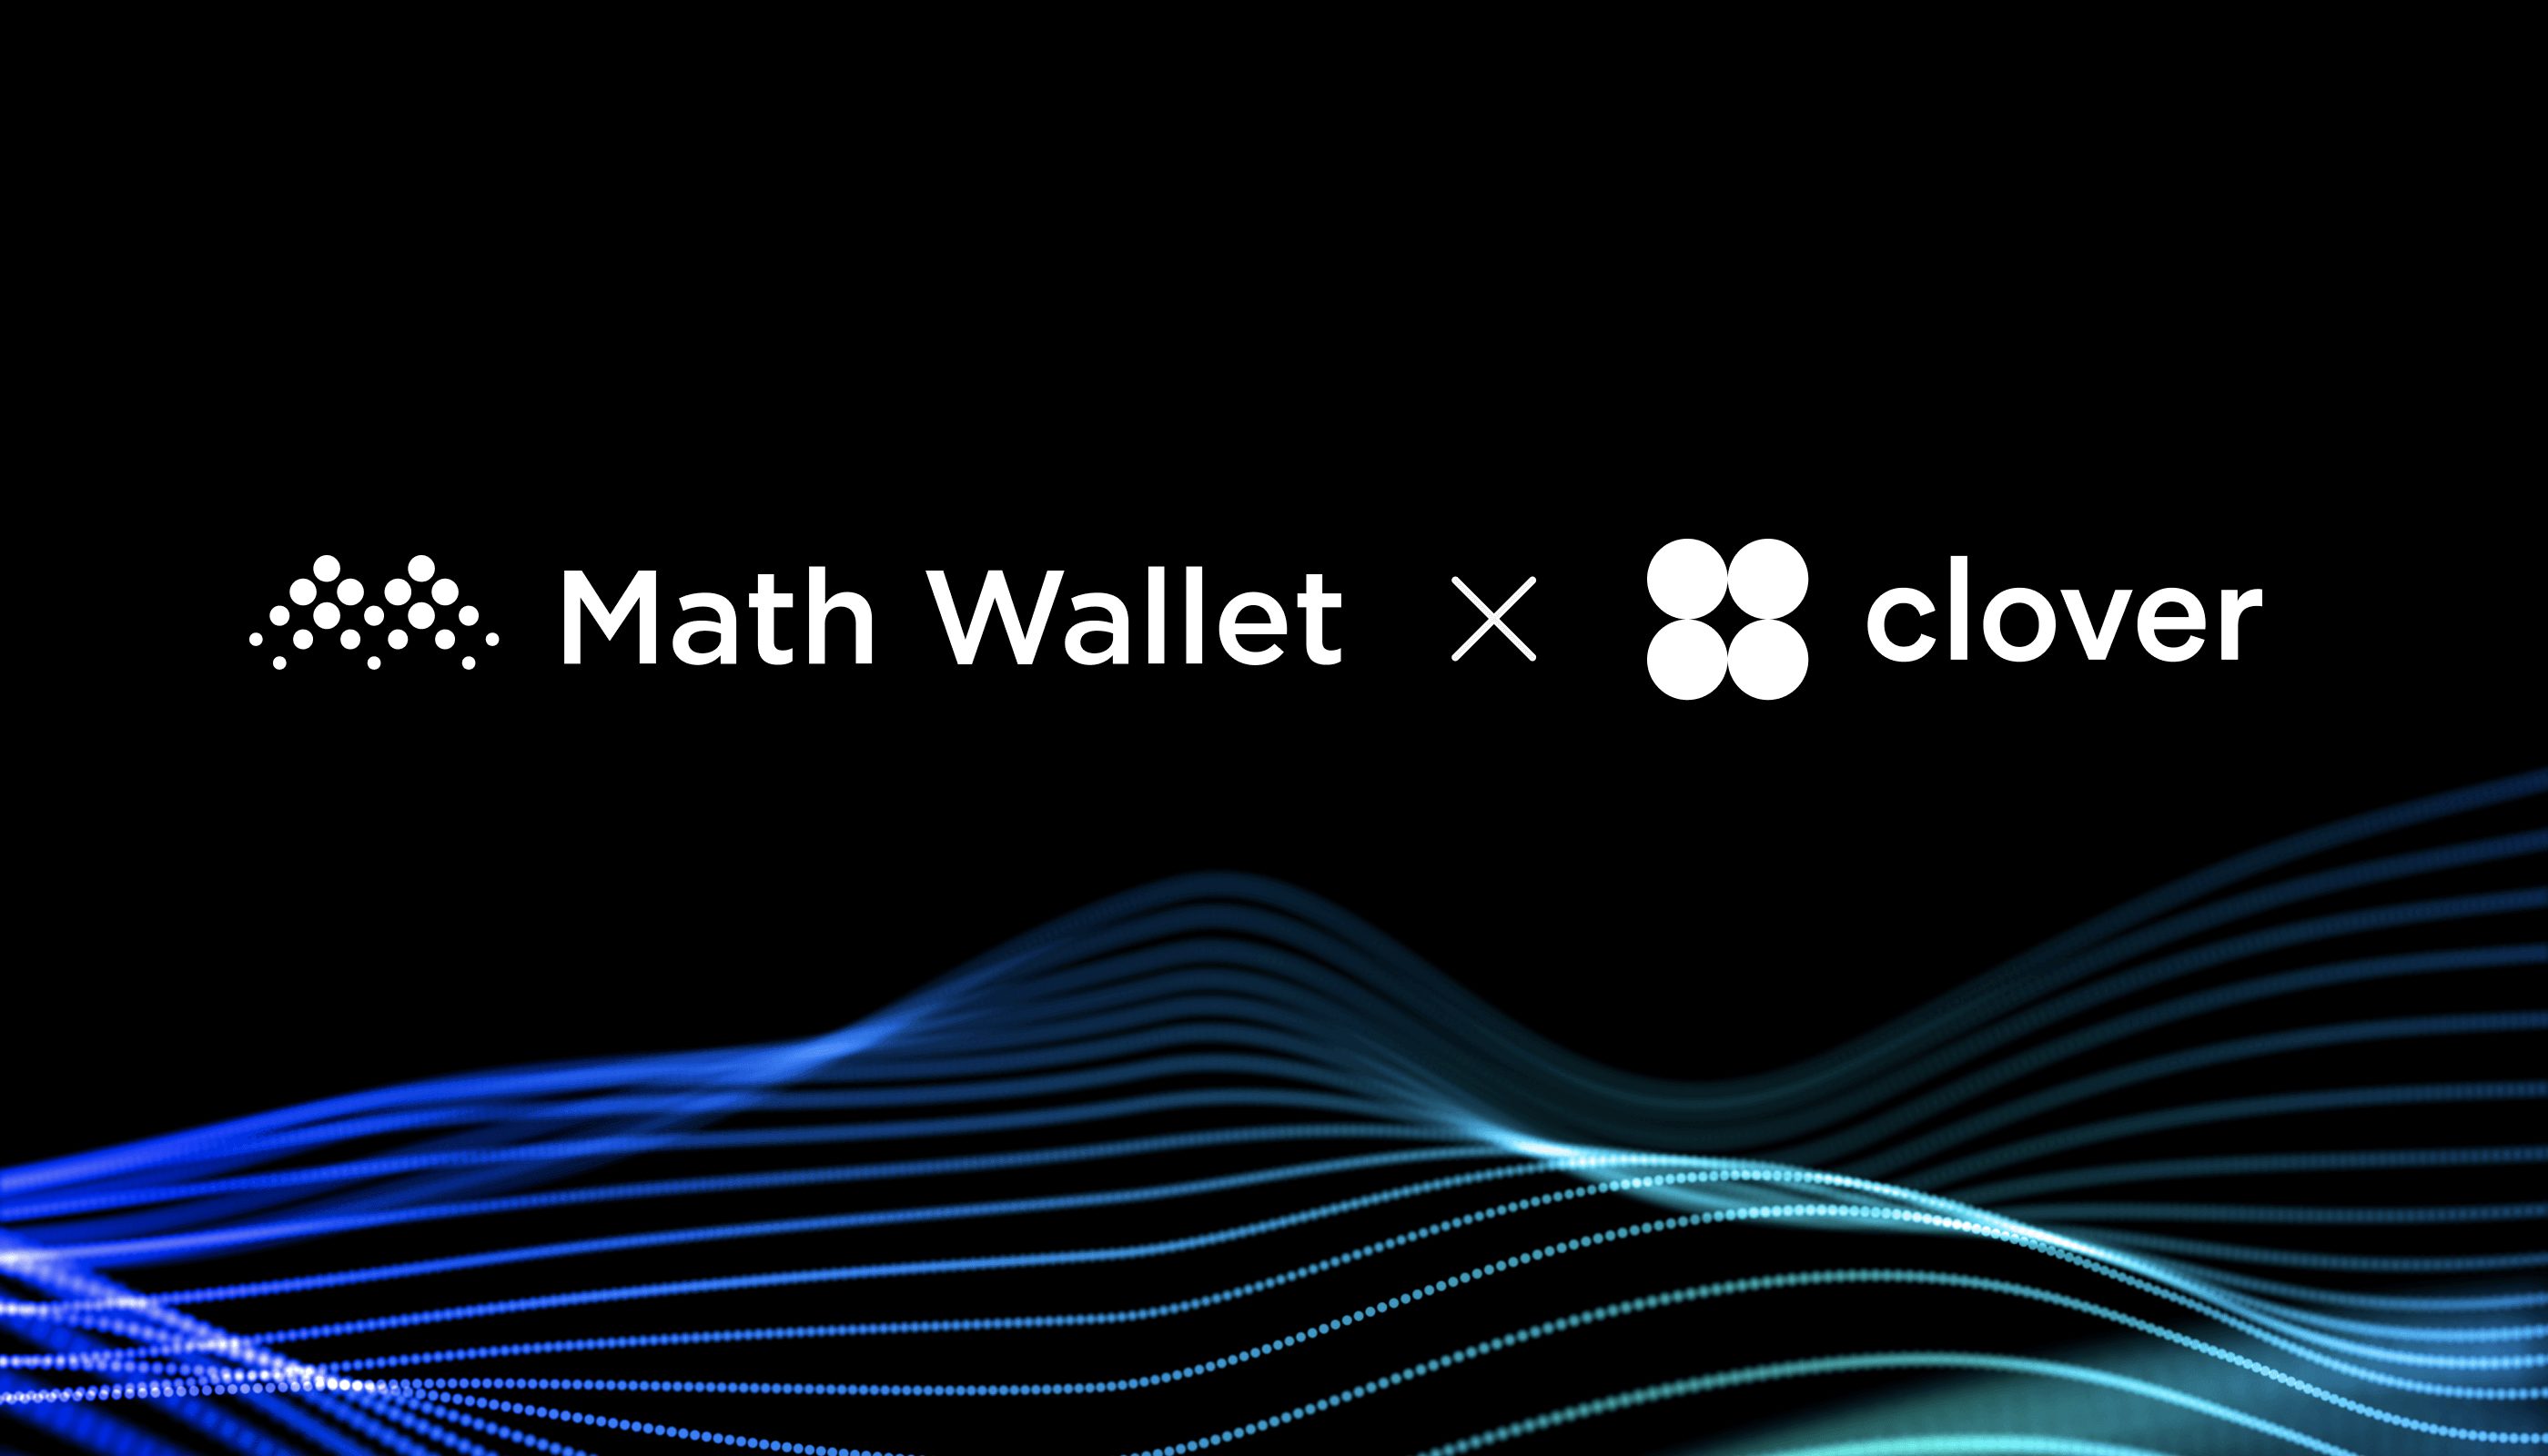 Clover x MathWallet Partnership